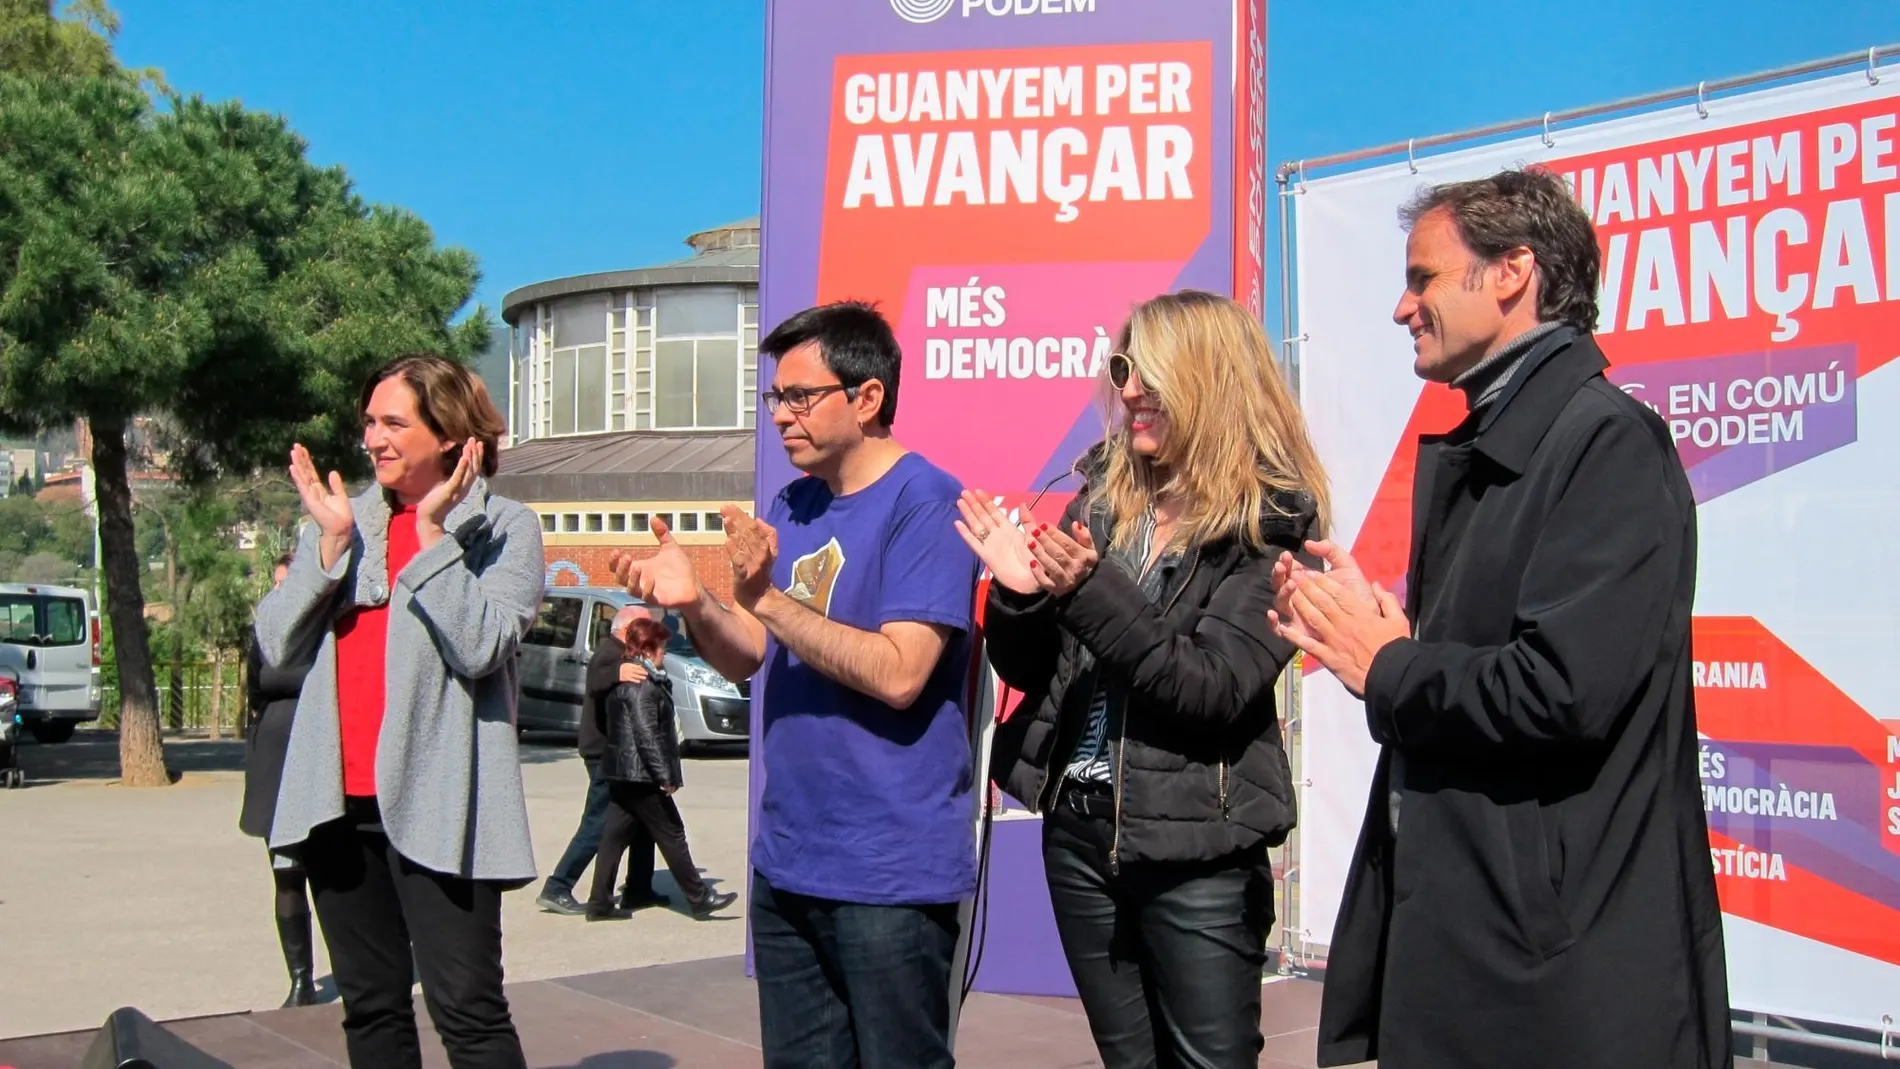 El candidato de En Comú Podem, Jaume Asens, en un acto de campaña junto a Colau y varios dirigentes del partido.